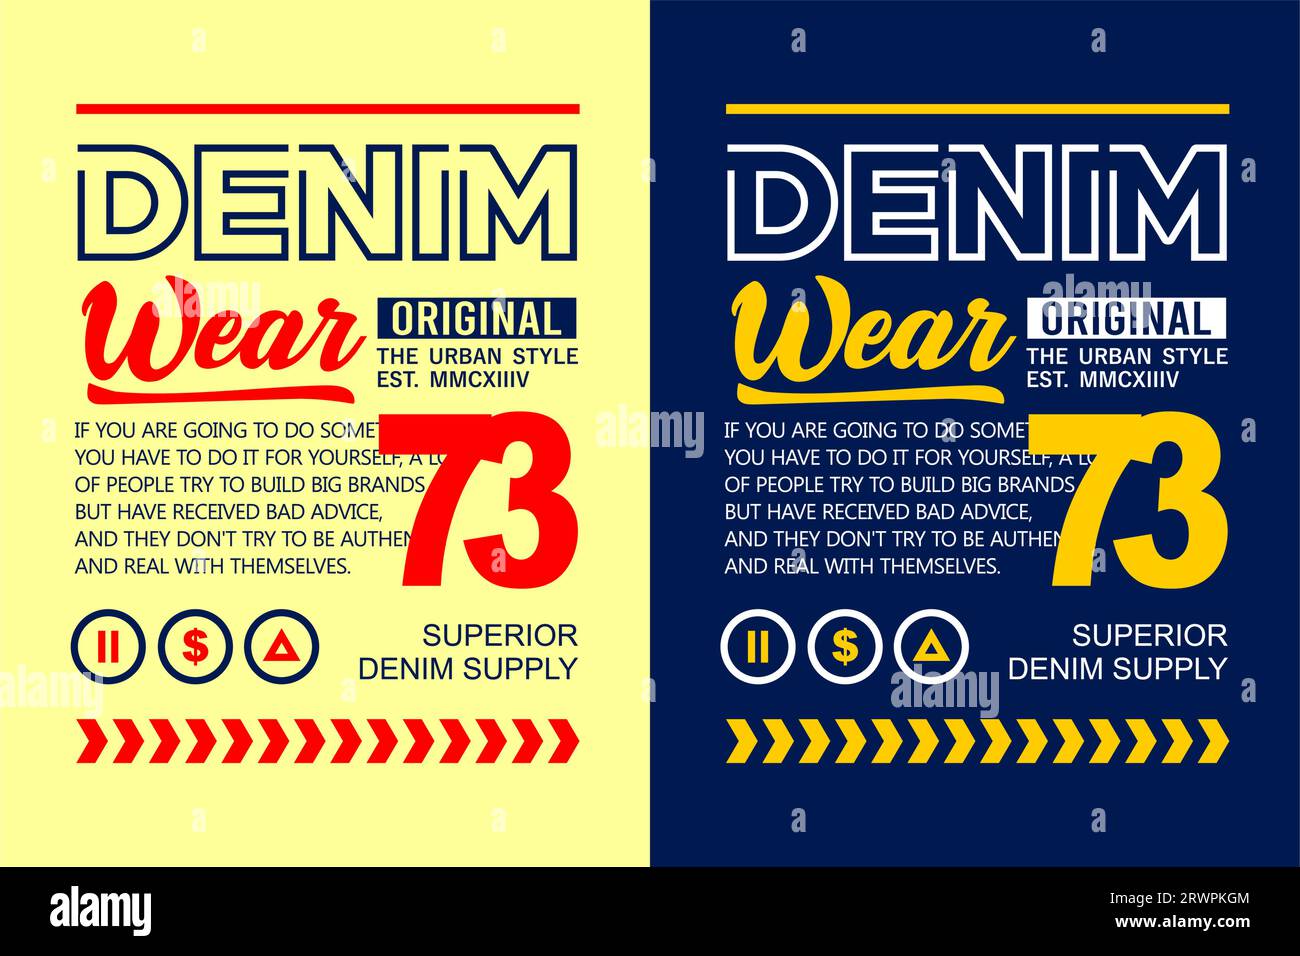 denim wear, style urbain, pour t-shirt, affiches, étiquettes, etc. conception vectorielle Illustration de Vecteur